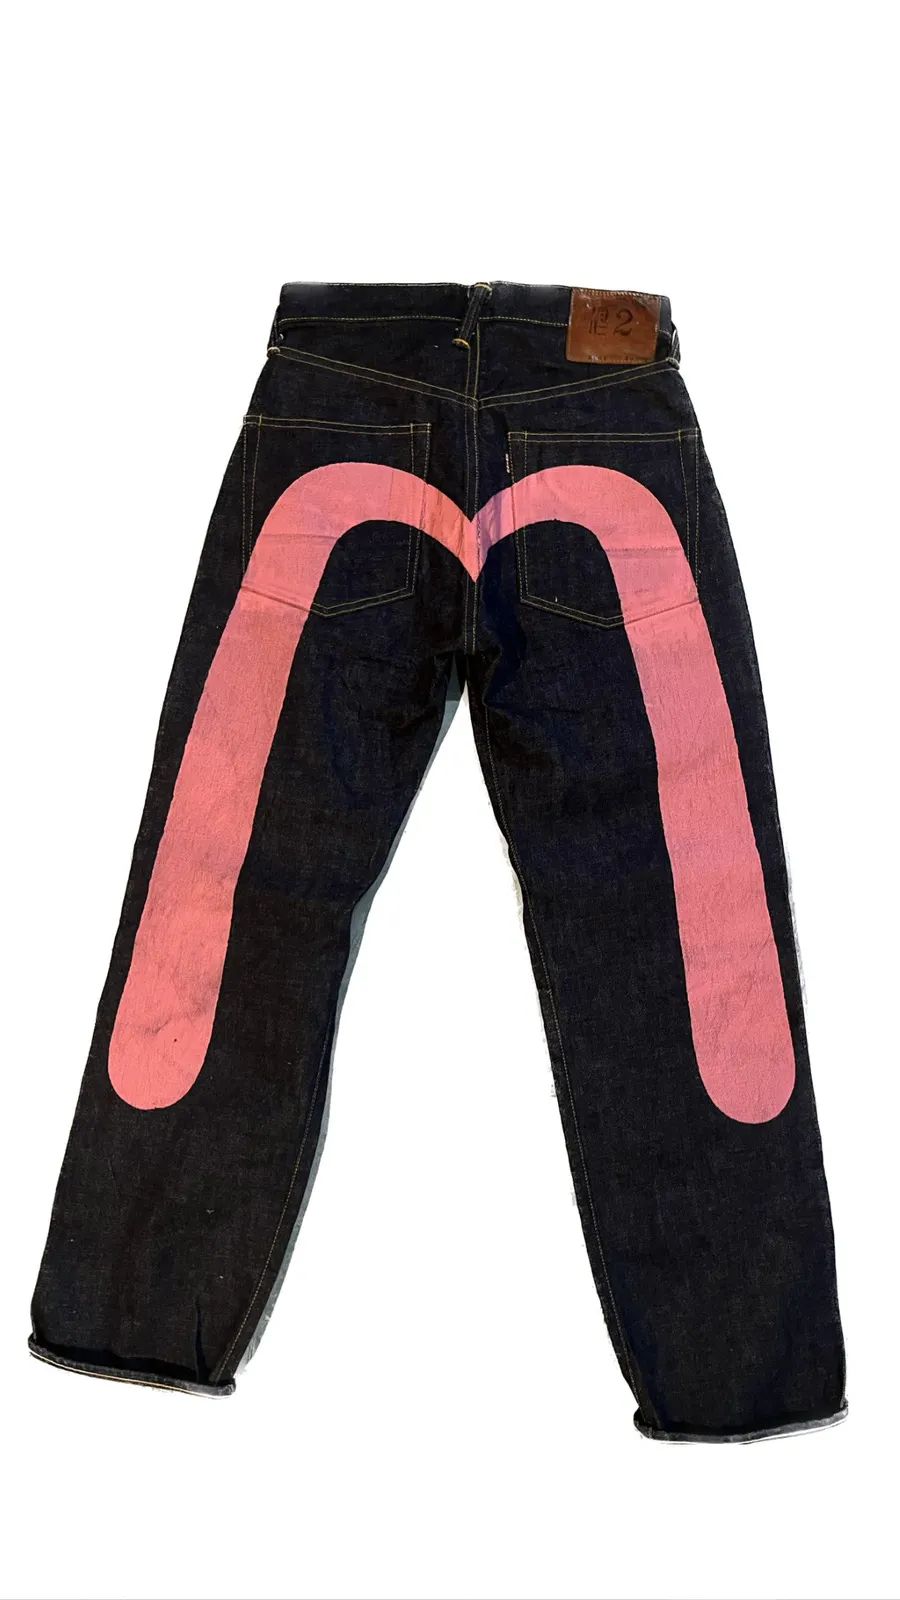 Evisu Vintage Evisu Pink Daicock Jeans | Grailed | Grailed